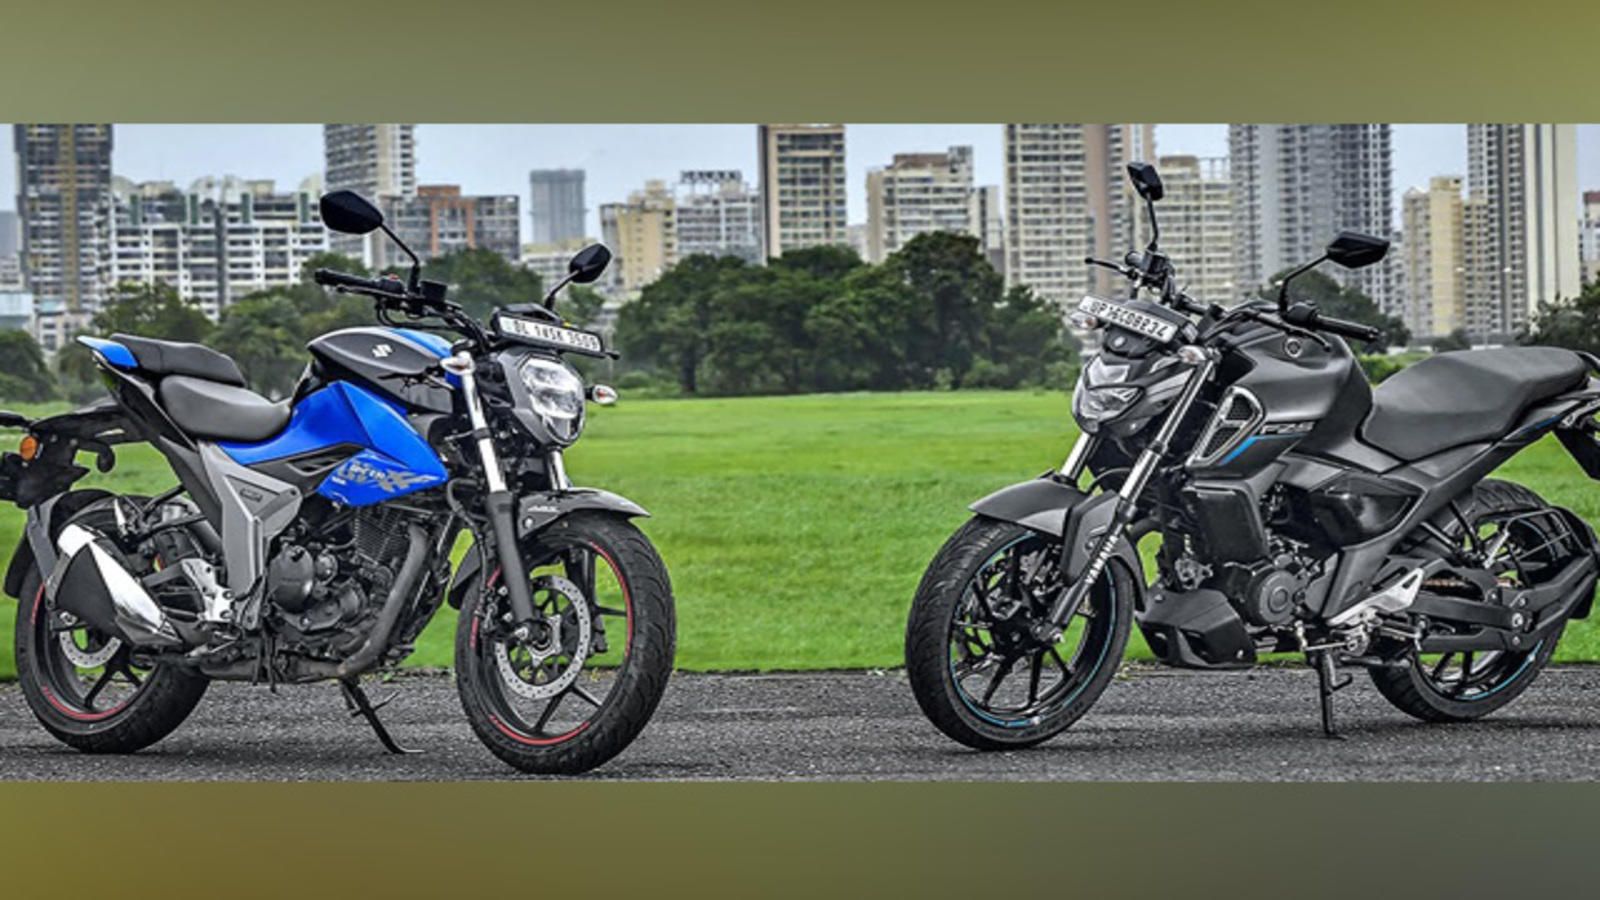 Autocar Show: 2019 Suzuki Gixxer Vs Yamaha FZ S V3.0 Economic Times Video